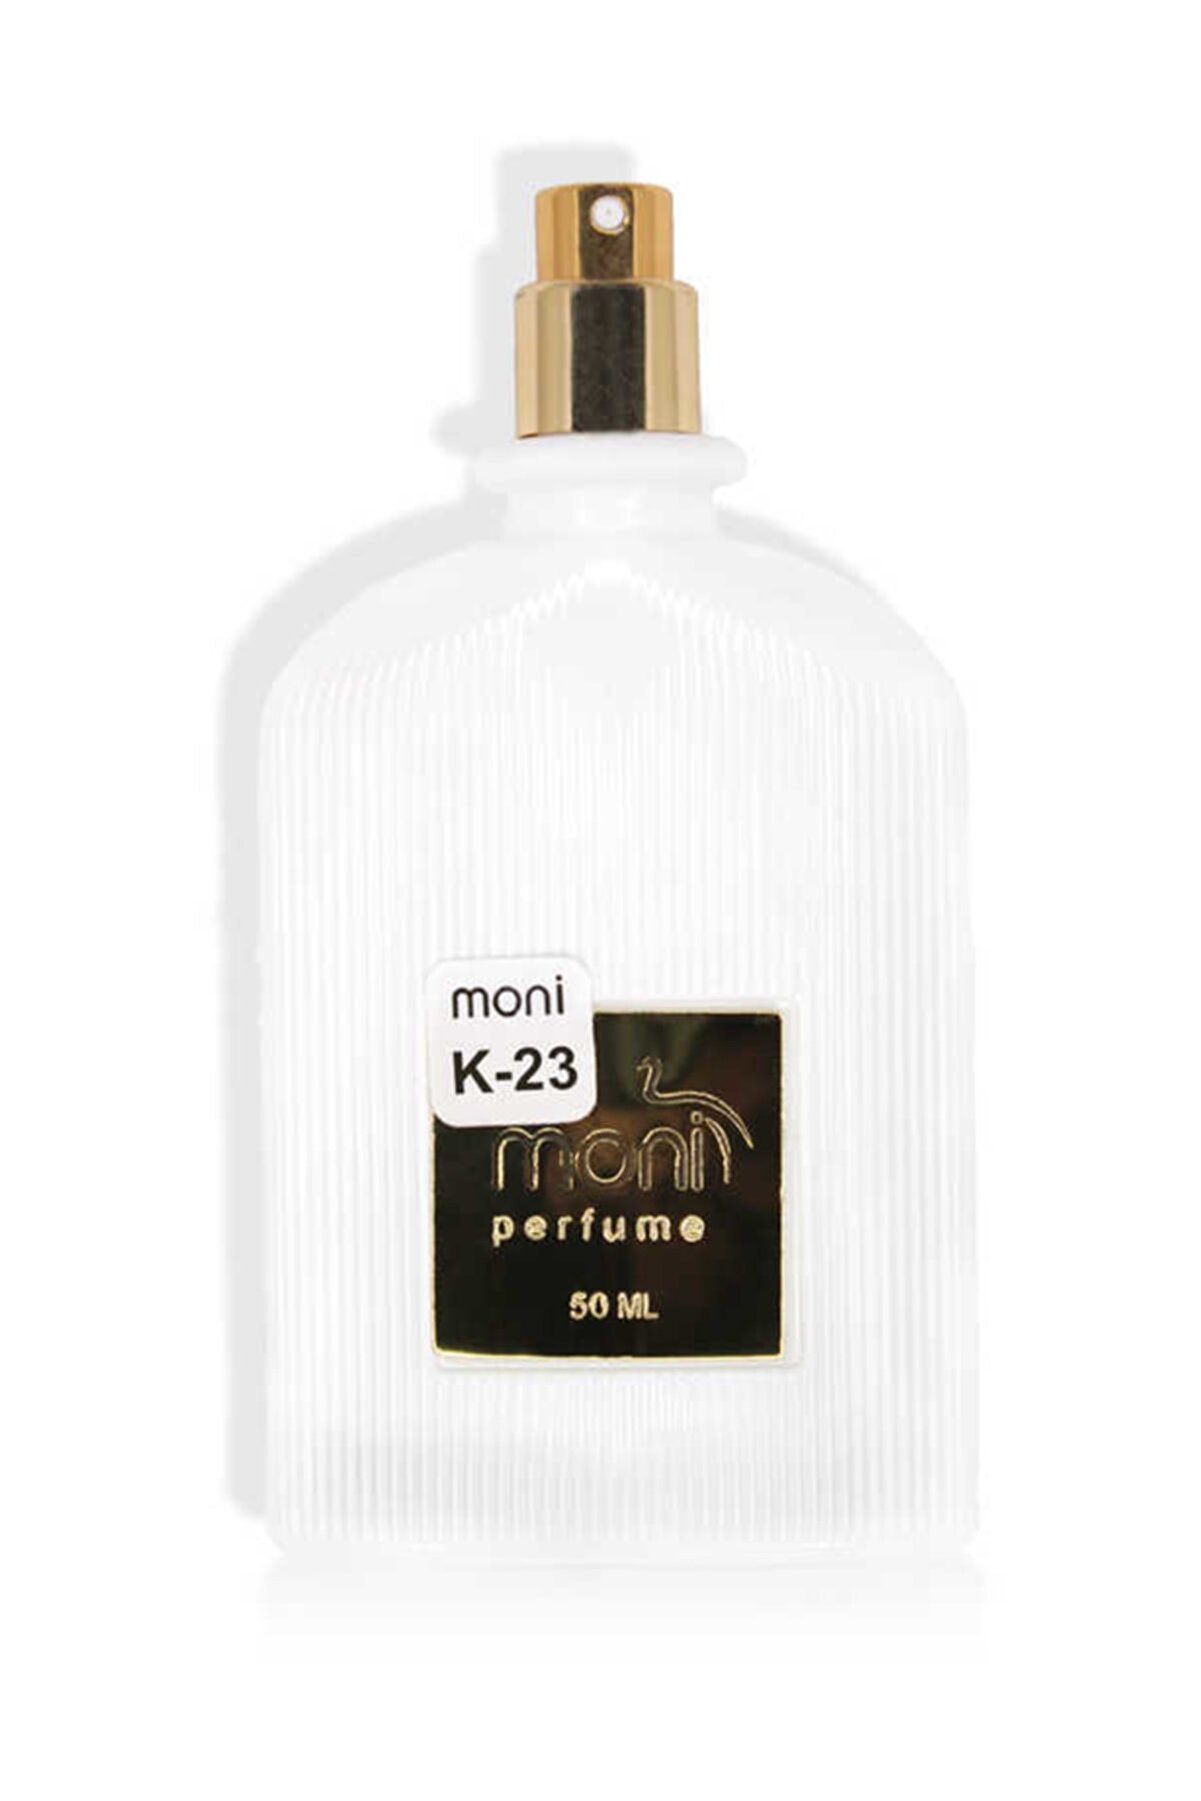 Monin Moni kadın Parfüm 50 Ml K-23